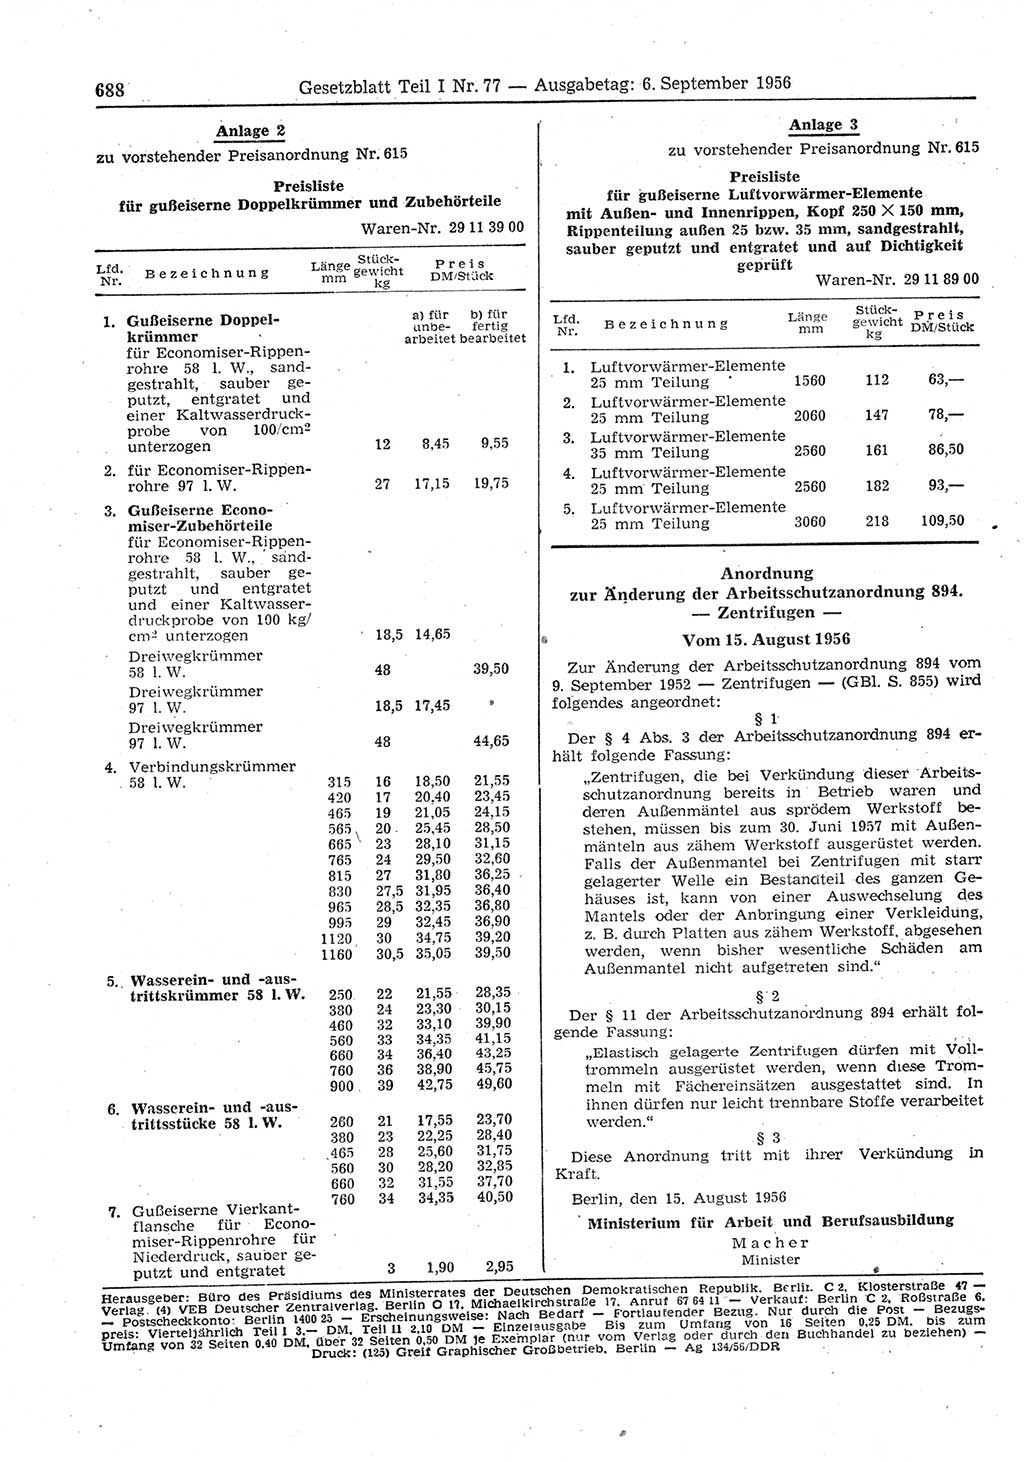 Gesetzblatt (GBl.) der Deutschen Demokratischen Republik (DDR) Teil Ⅰ 1956, Seite 688 (GBl. DDR Ⅰ 1956, S. 688)